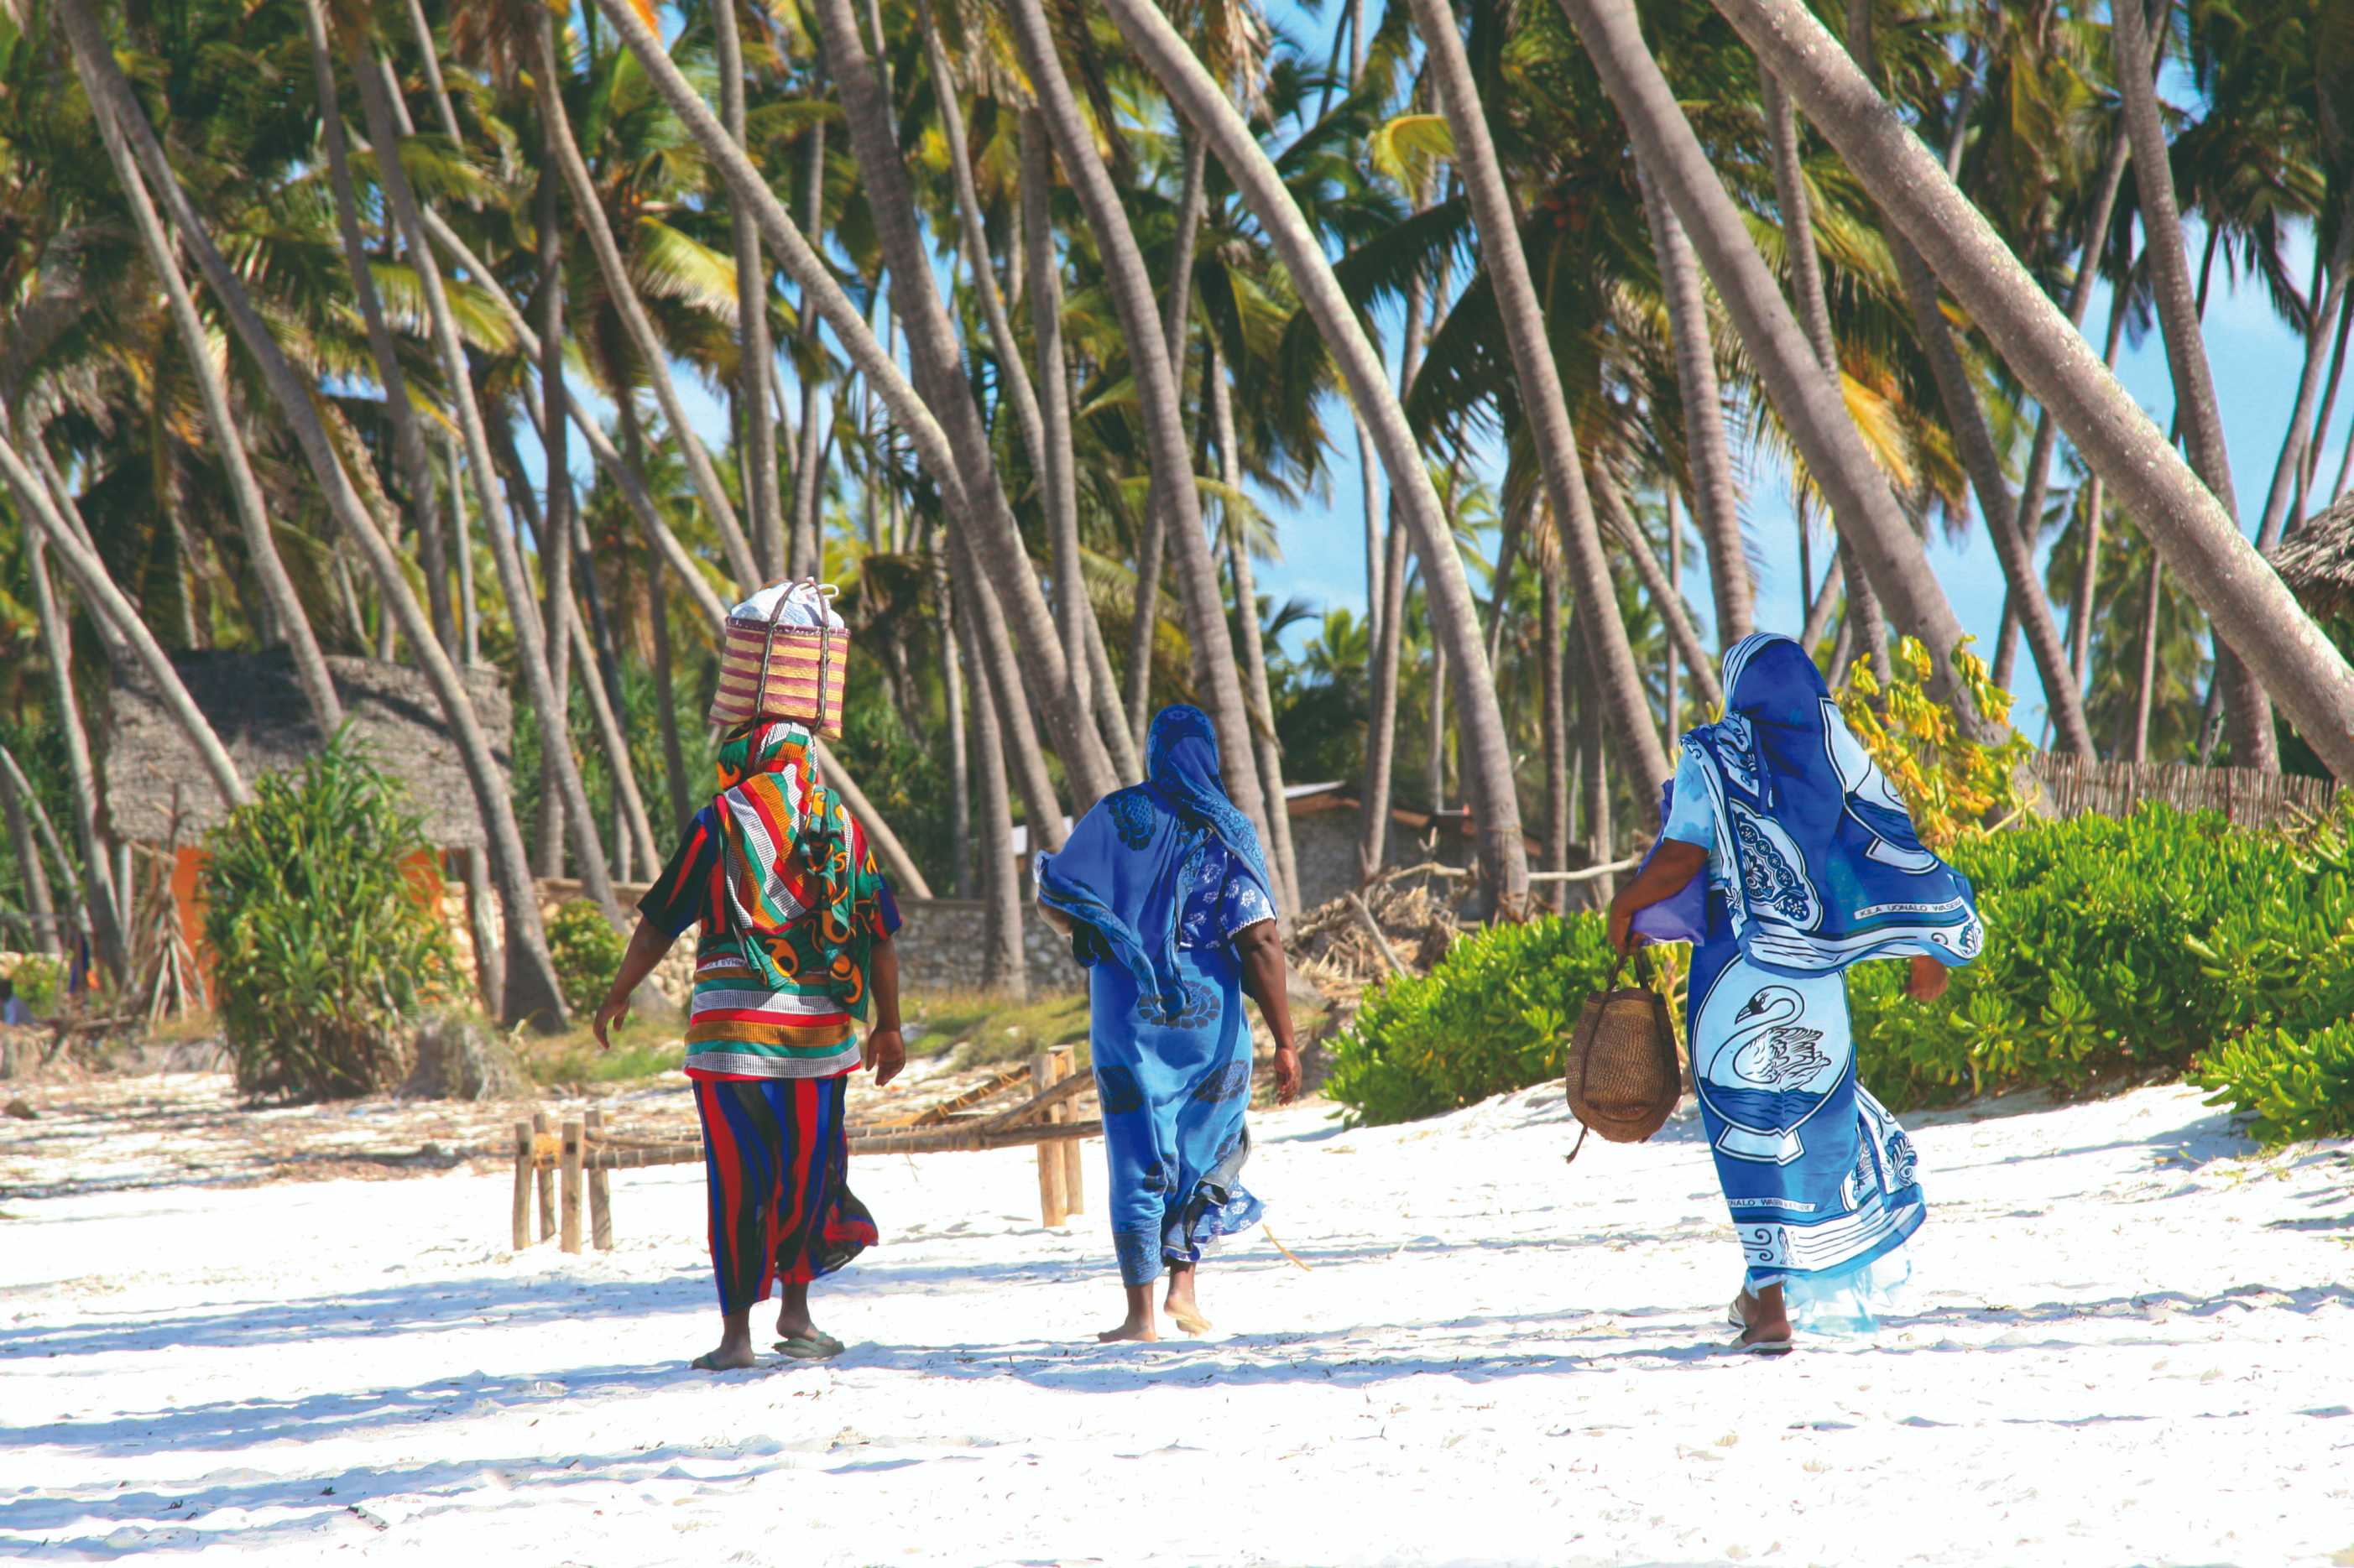 Femmes de Zanzibar sur une plage de sable.